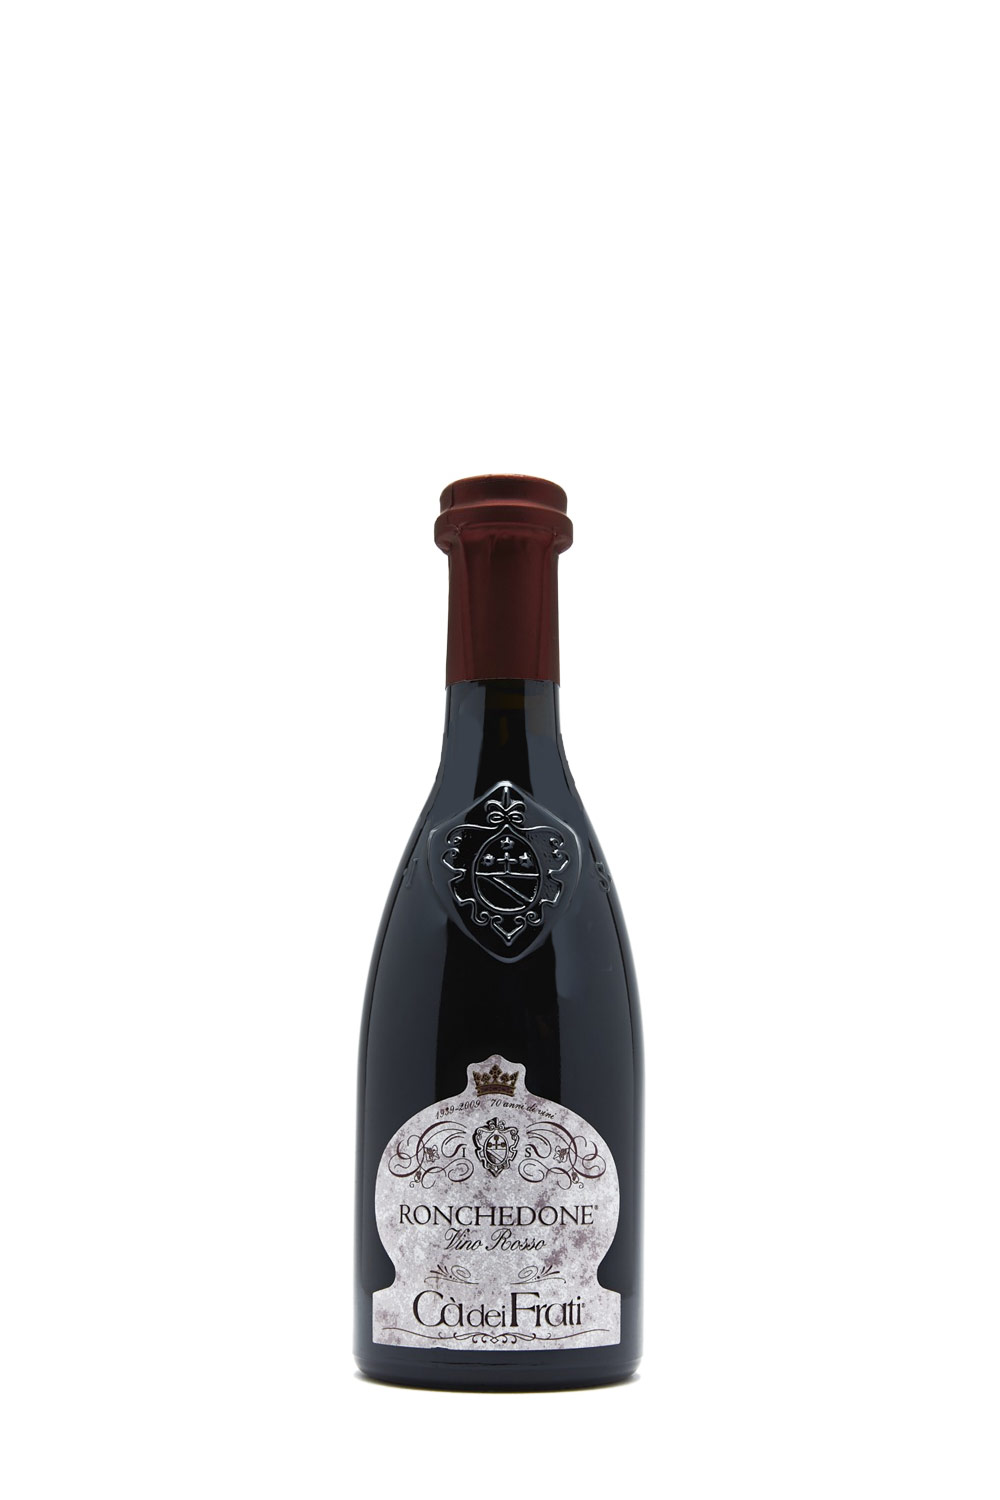 Cà dei Frati Ronchedone vino rosso 2020 Halbe Flasche (0,375 L) | Online  kaufen bei Senti Vini - Weine aus Italien